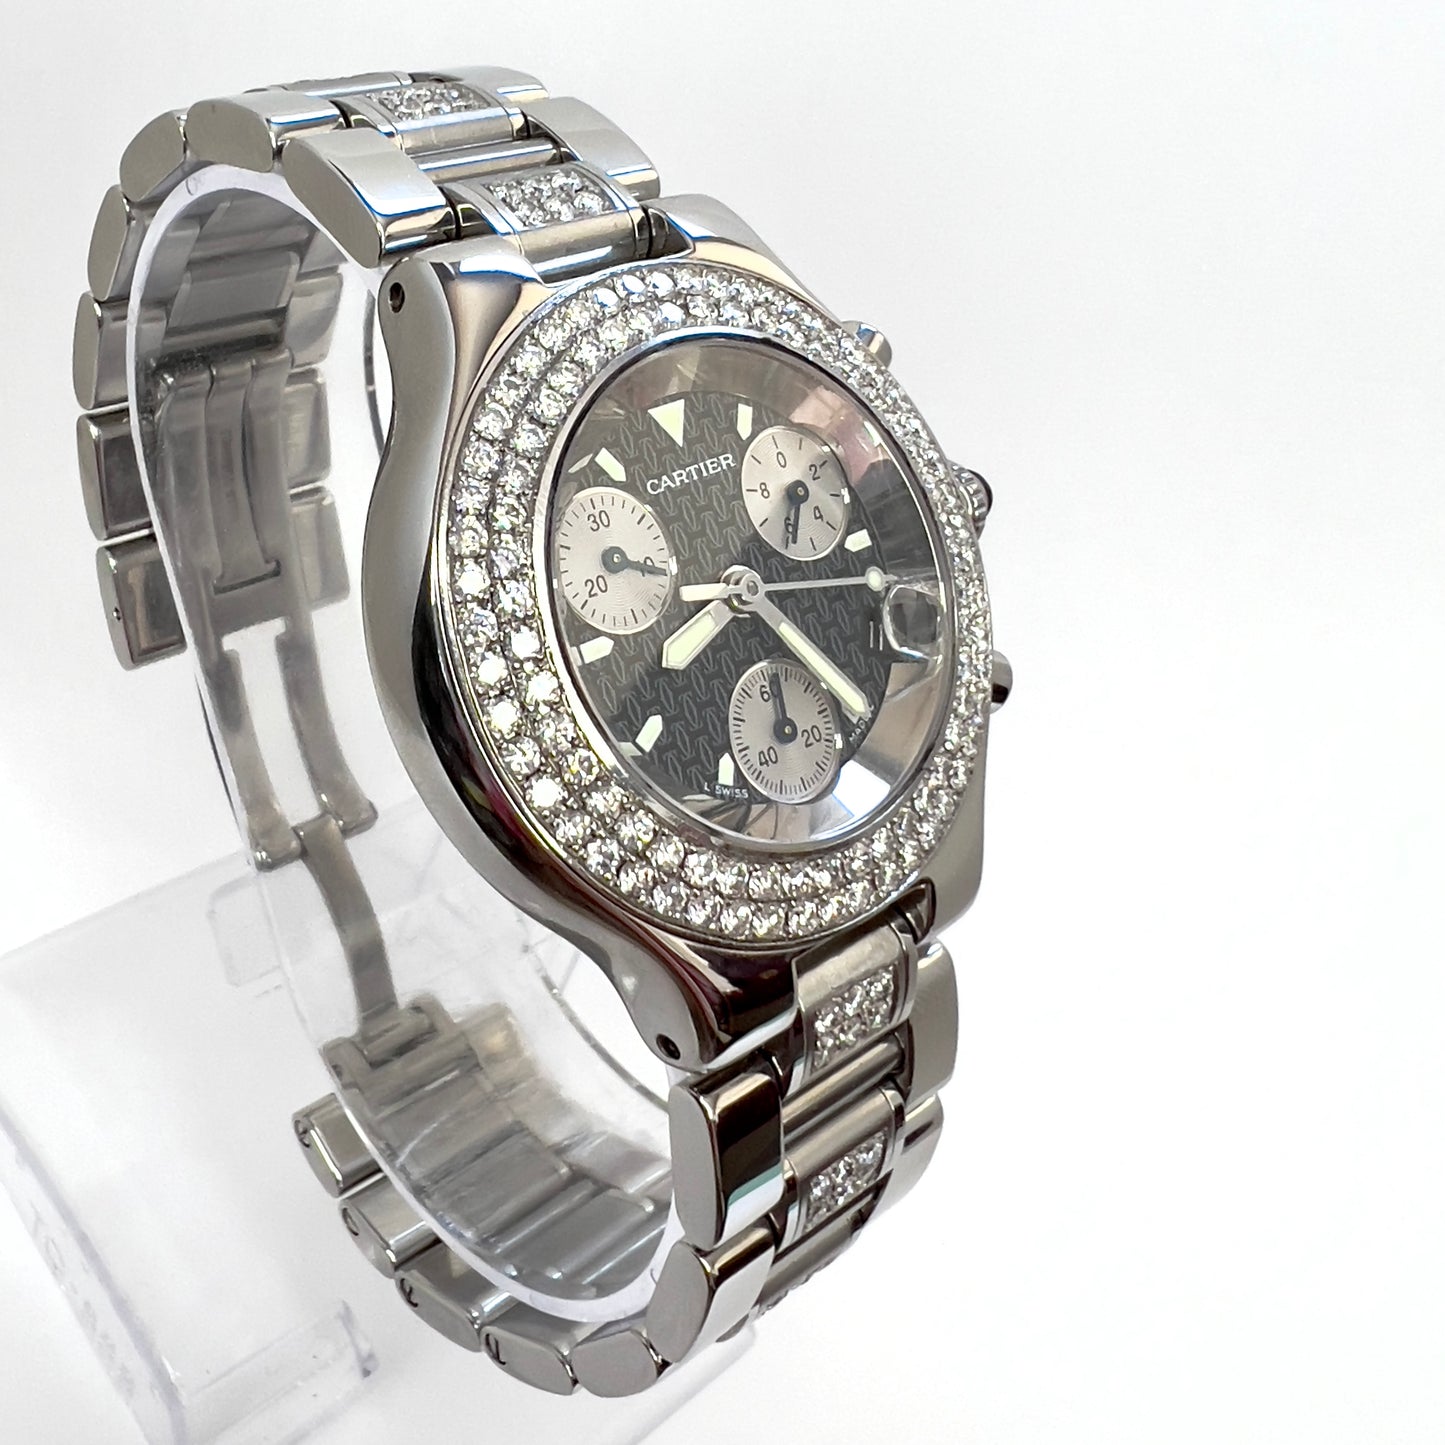 CARTIER Chronoscaph 21 Quartz Steel 38mm 3.10TCW Diamond Watch